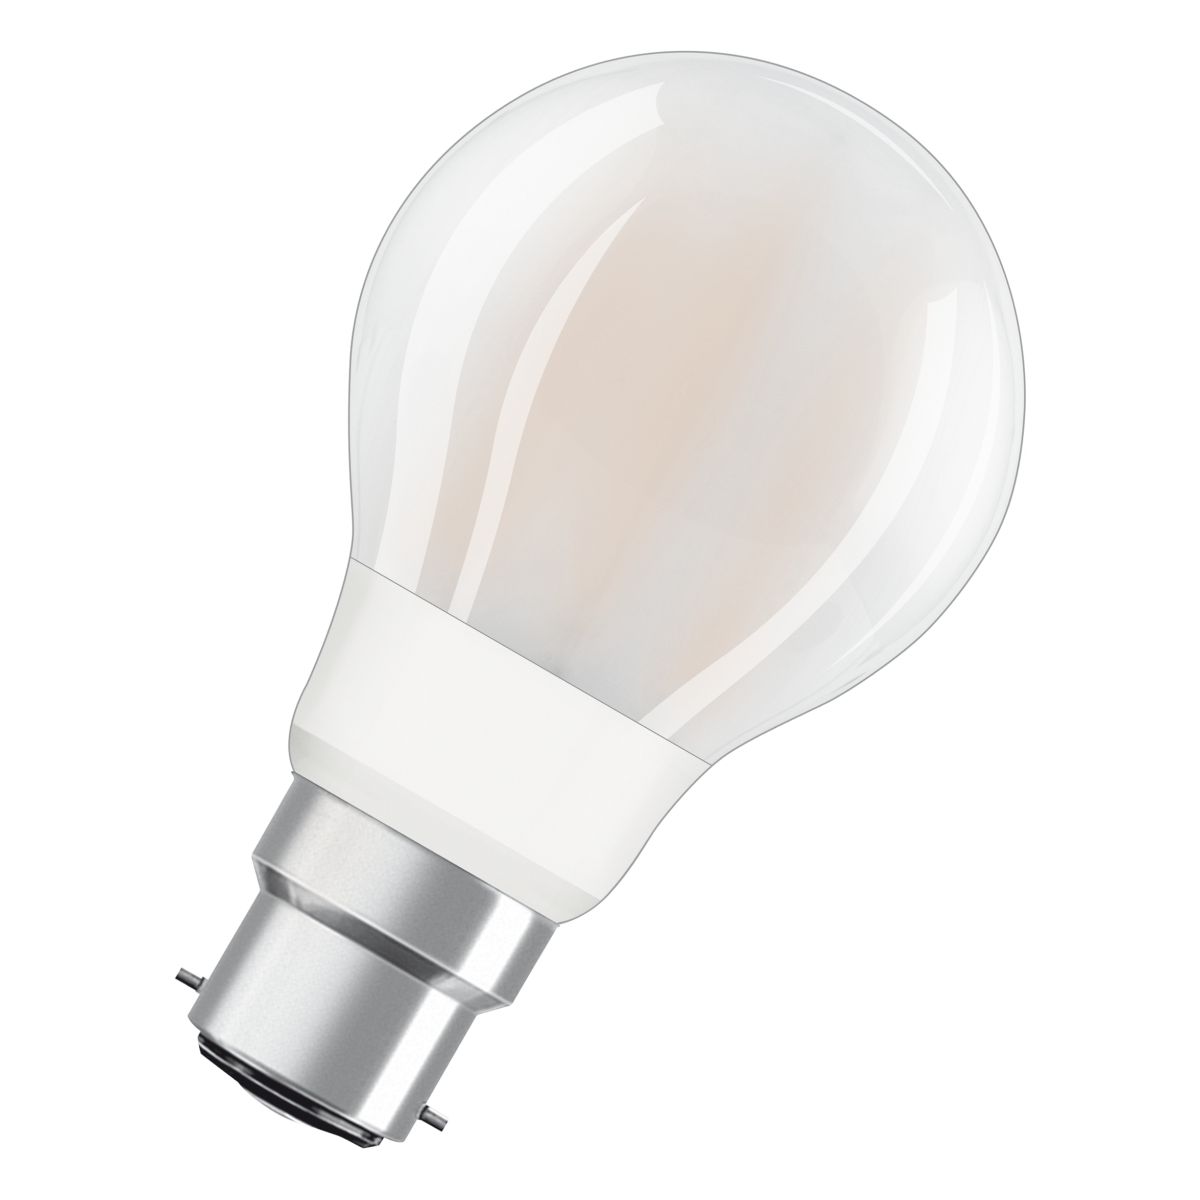 Ampoule LED E27 Standard Blanc-chaud 60W x2 PHILIPS : le lot de 2